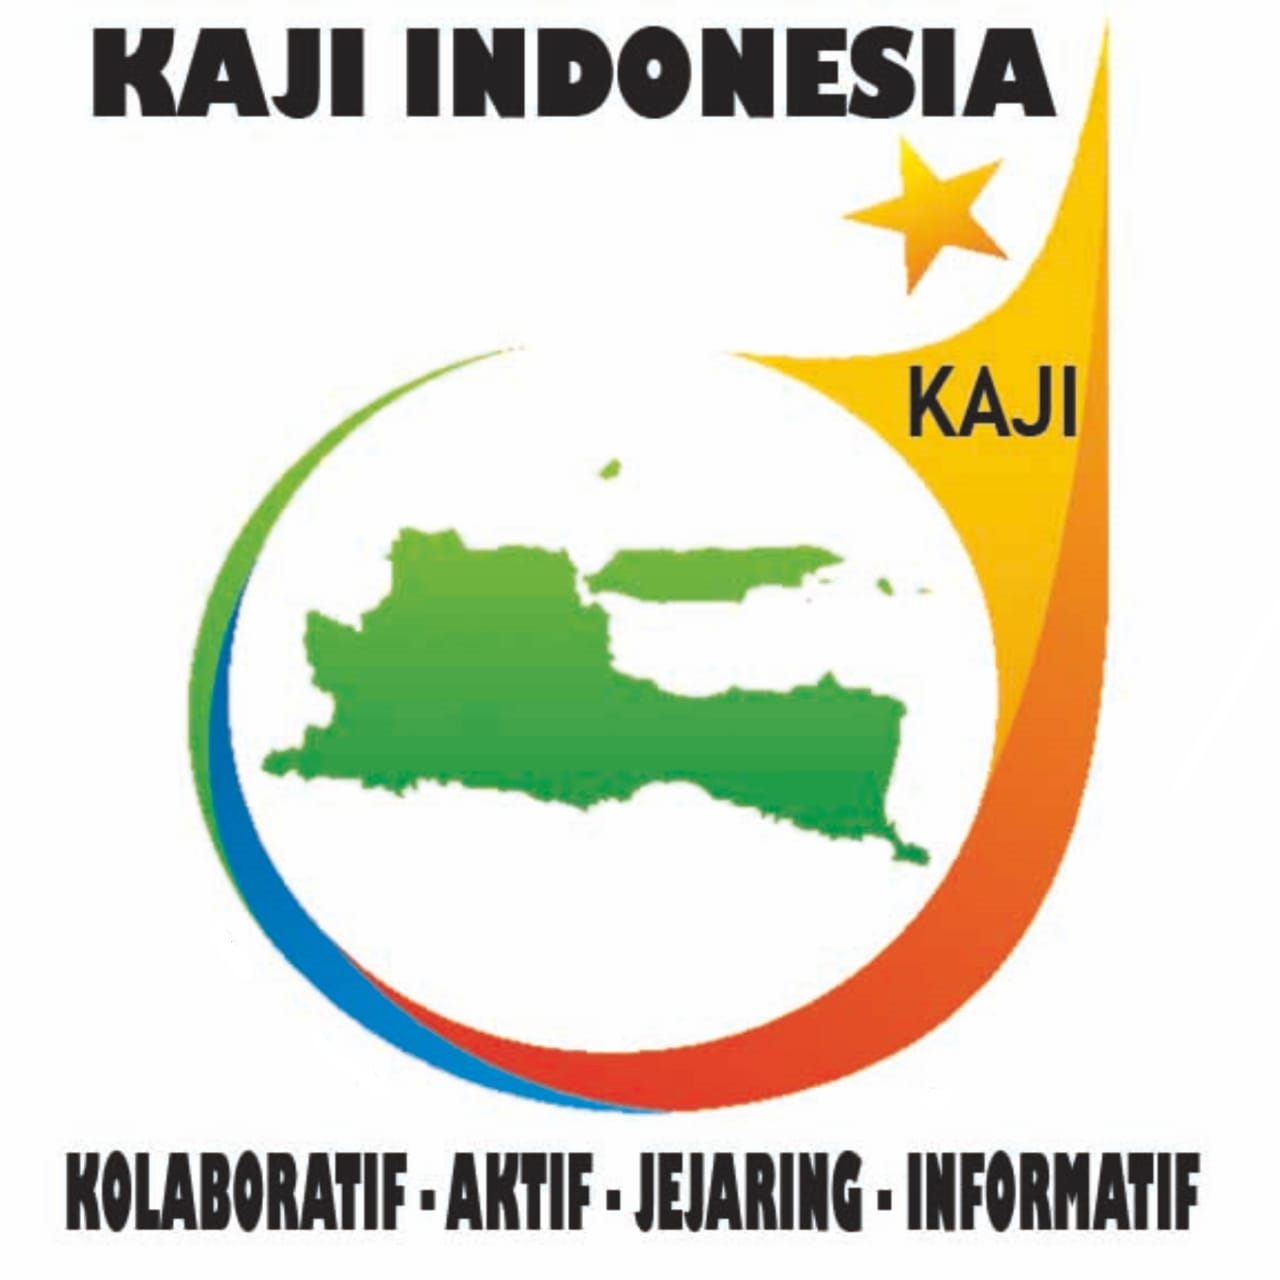 www.kajiindonesia.com